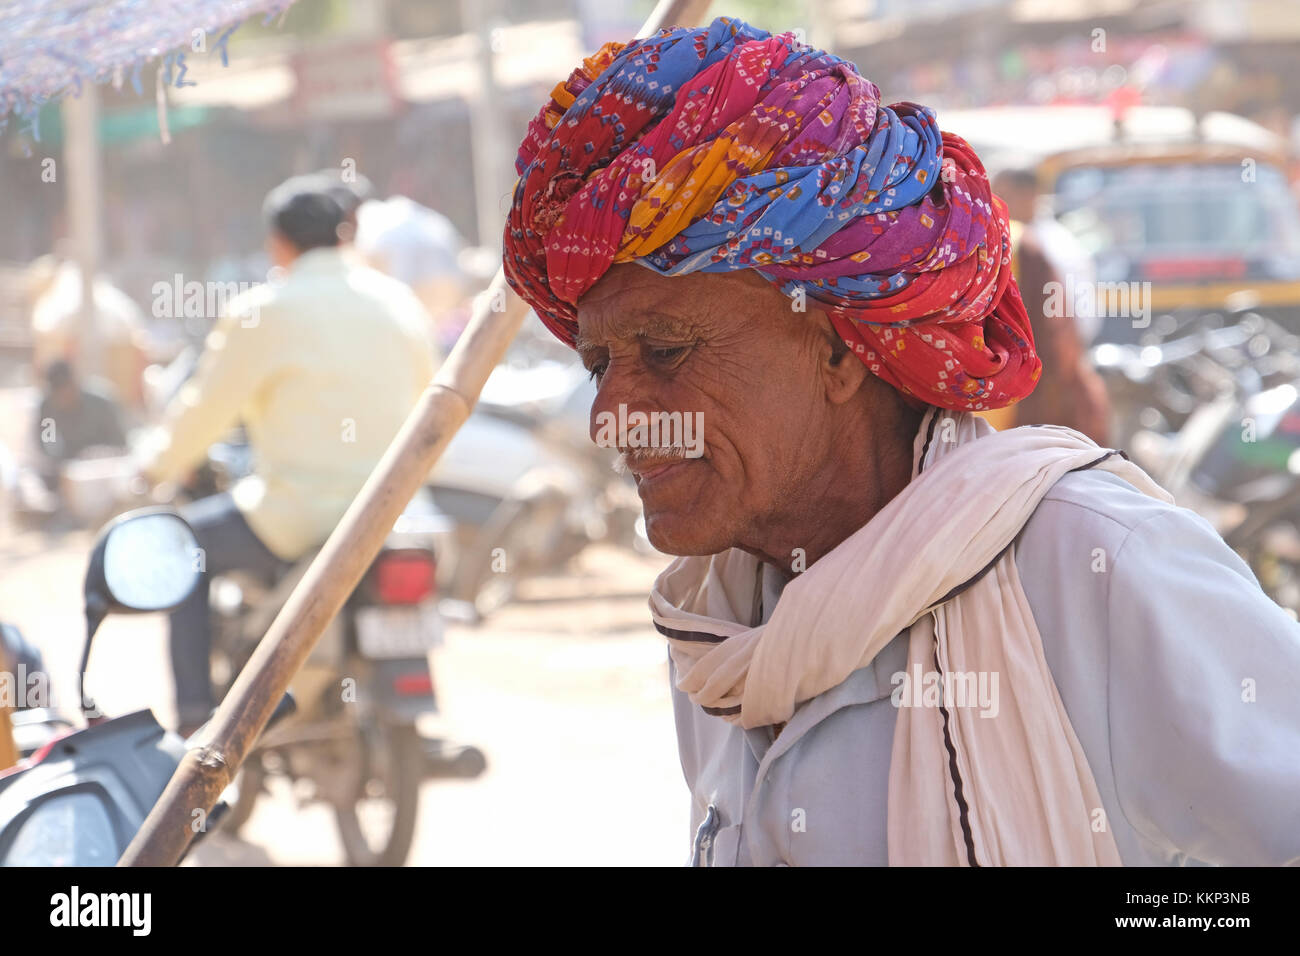 Turban wearing elderly man in Rajasthan, India Stock Photo